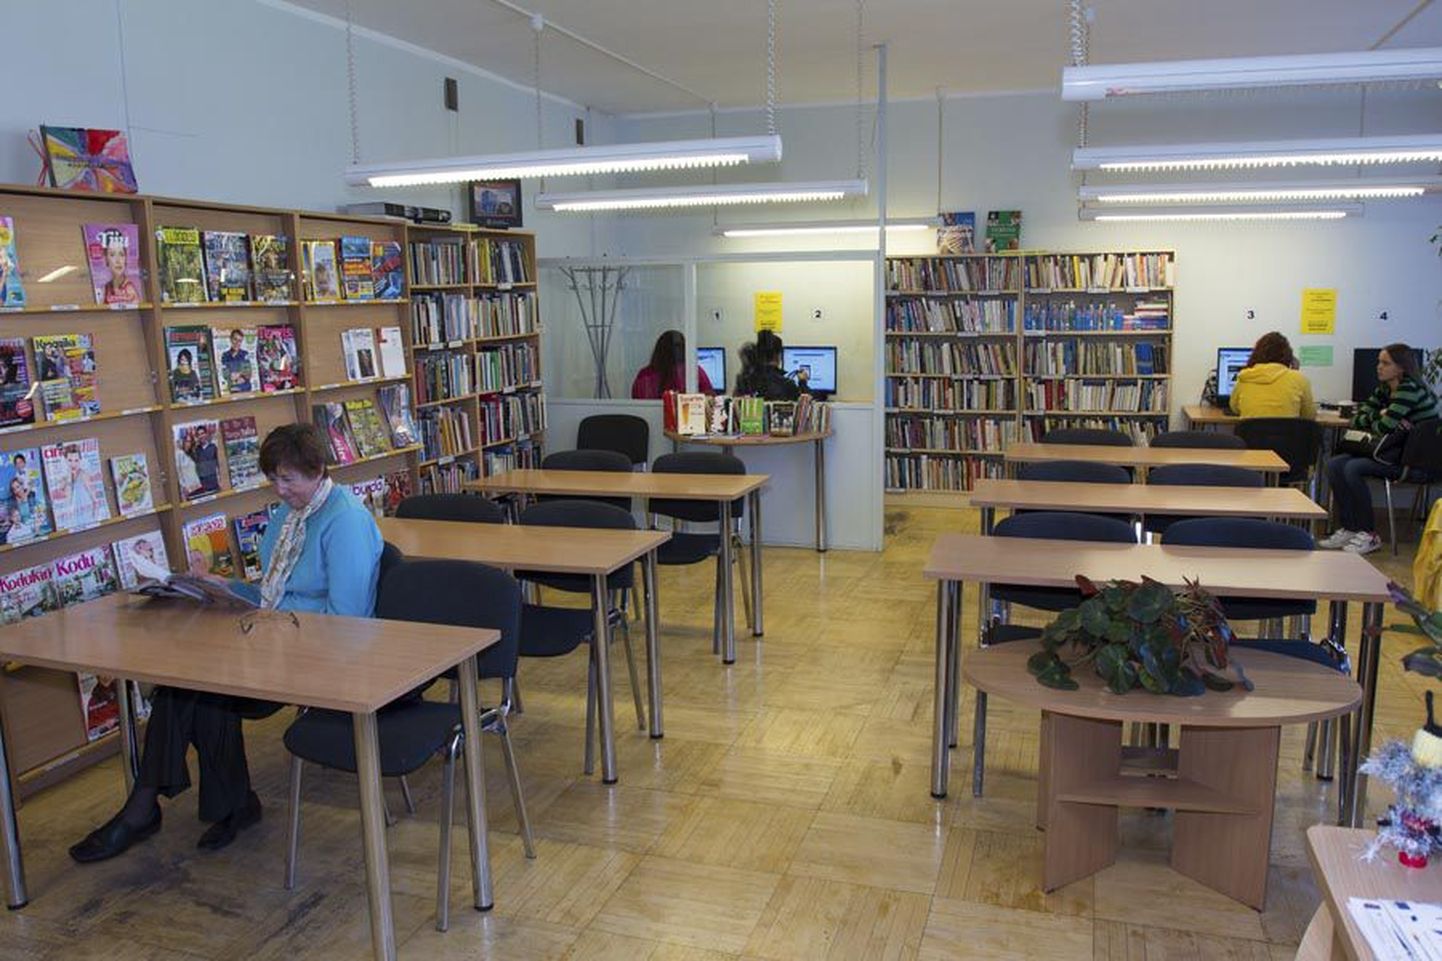 Juunist raamatukogu Männimäe osakonnast teavikuid laenata enam ei saa. Augusti lõpuks peab asutus olema praegusest hoonest lahkunud.